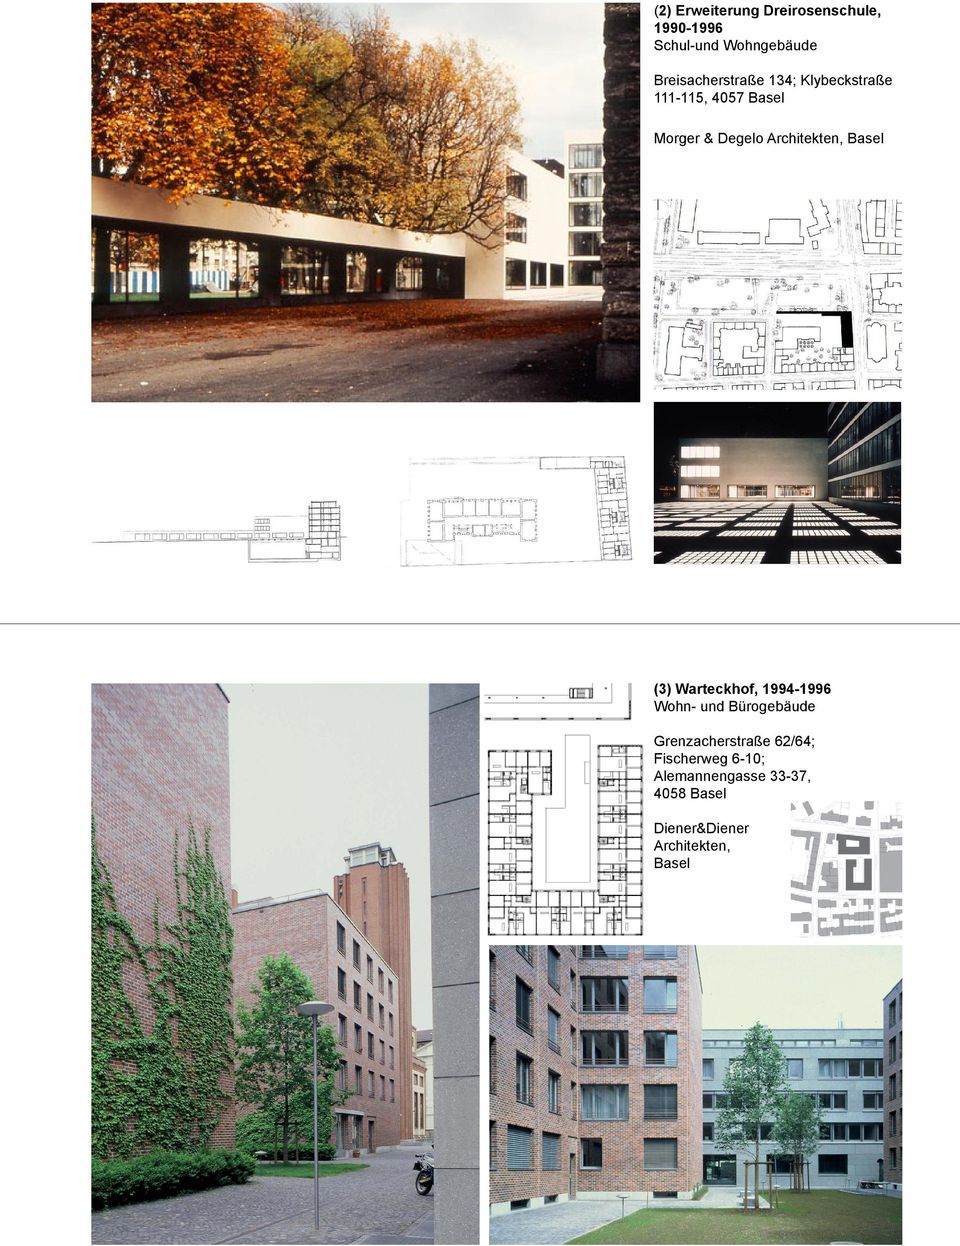 Architekten, Basel (3) Warteckhof, 1994-1996 Wohn- und Bürogebäude